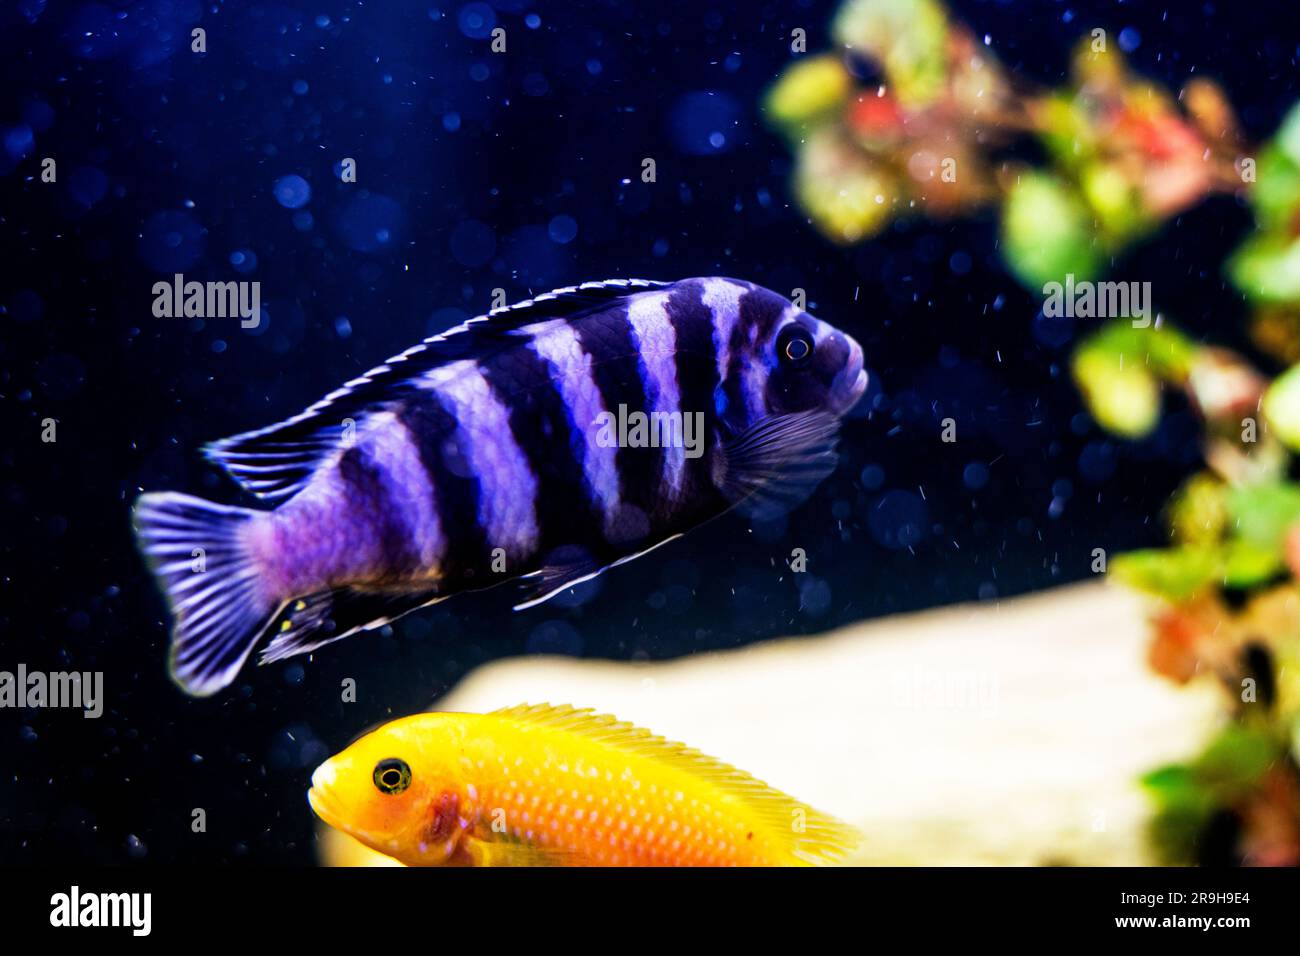 fish with purple stripes Pseudotropheus swims in the aquarium Stock Photo